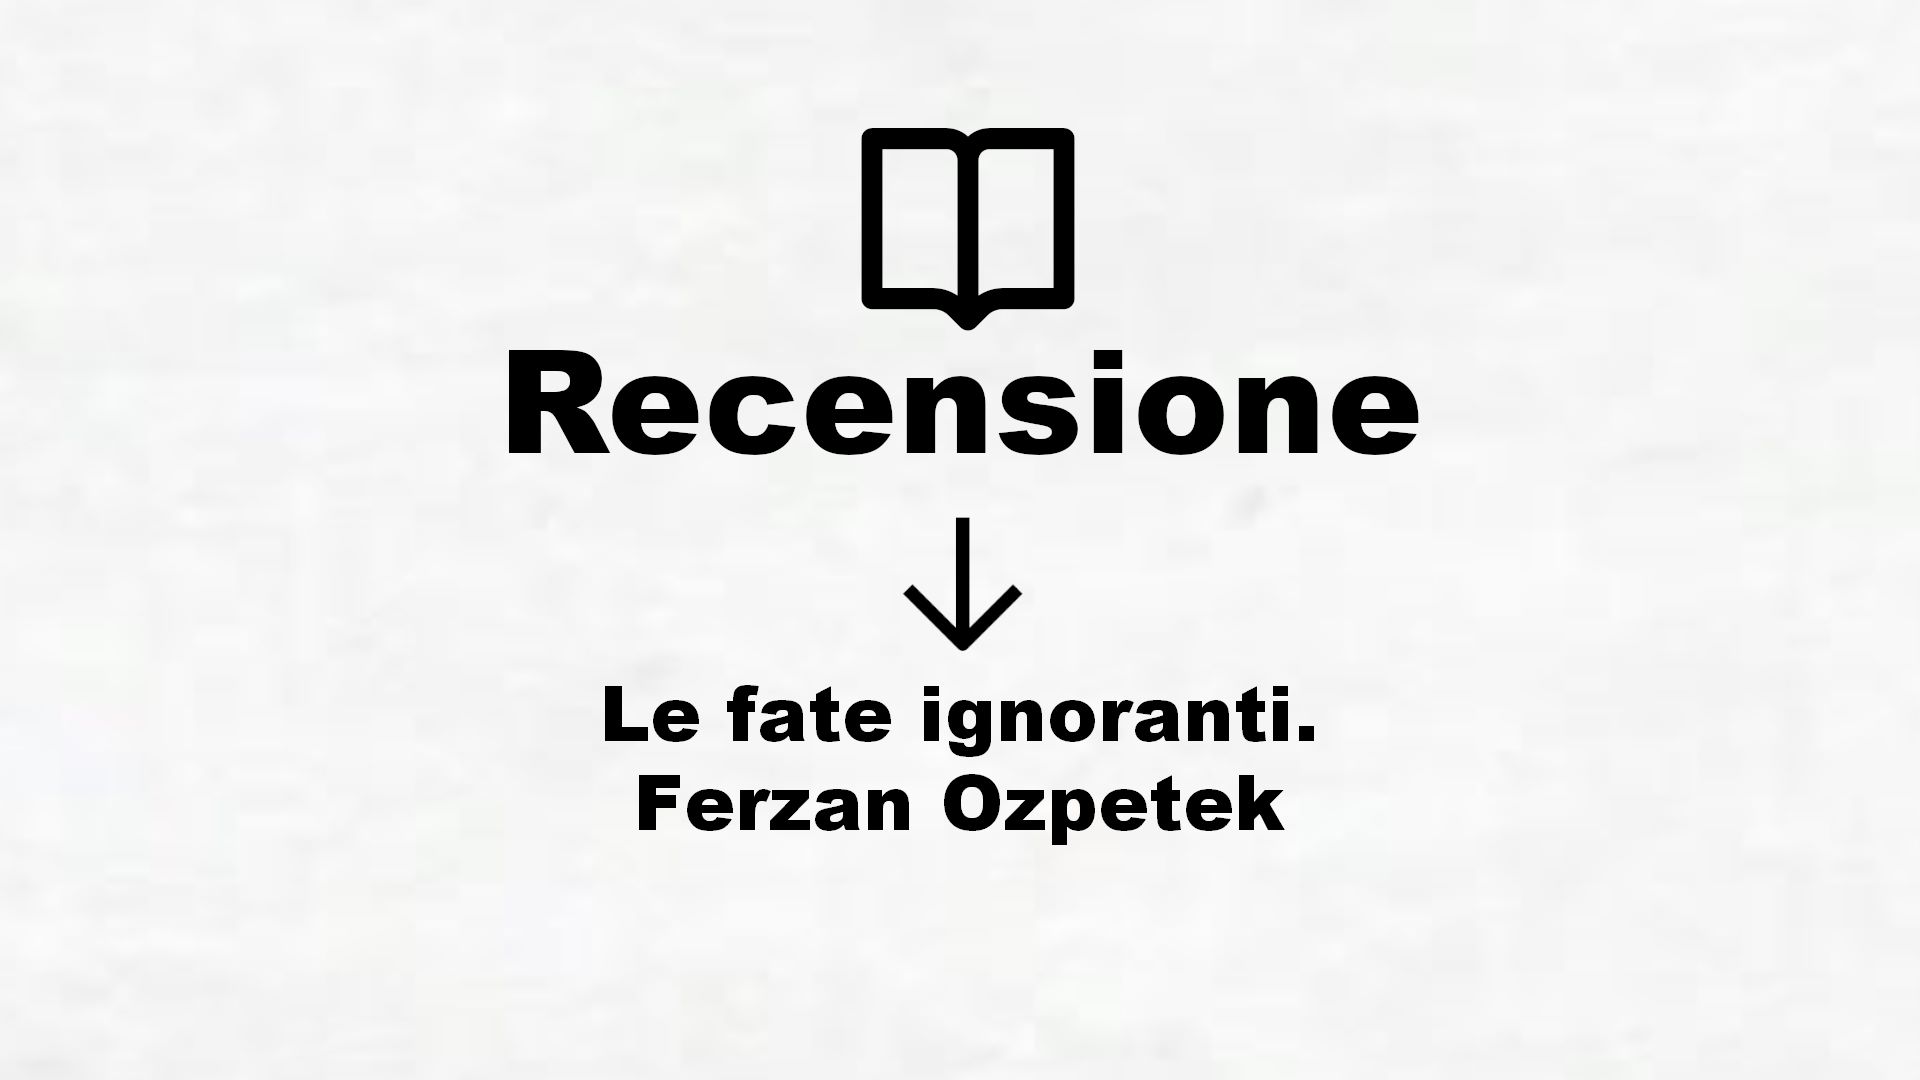 Le fate ignoranti. Ferzan Ozpetek – Recensione Libro